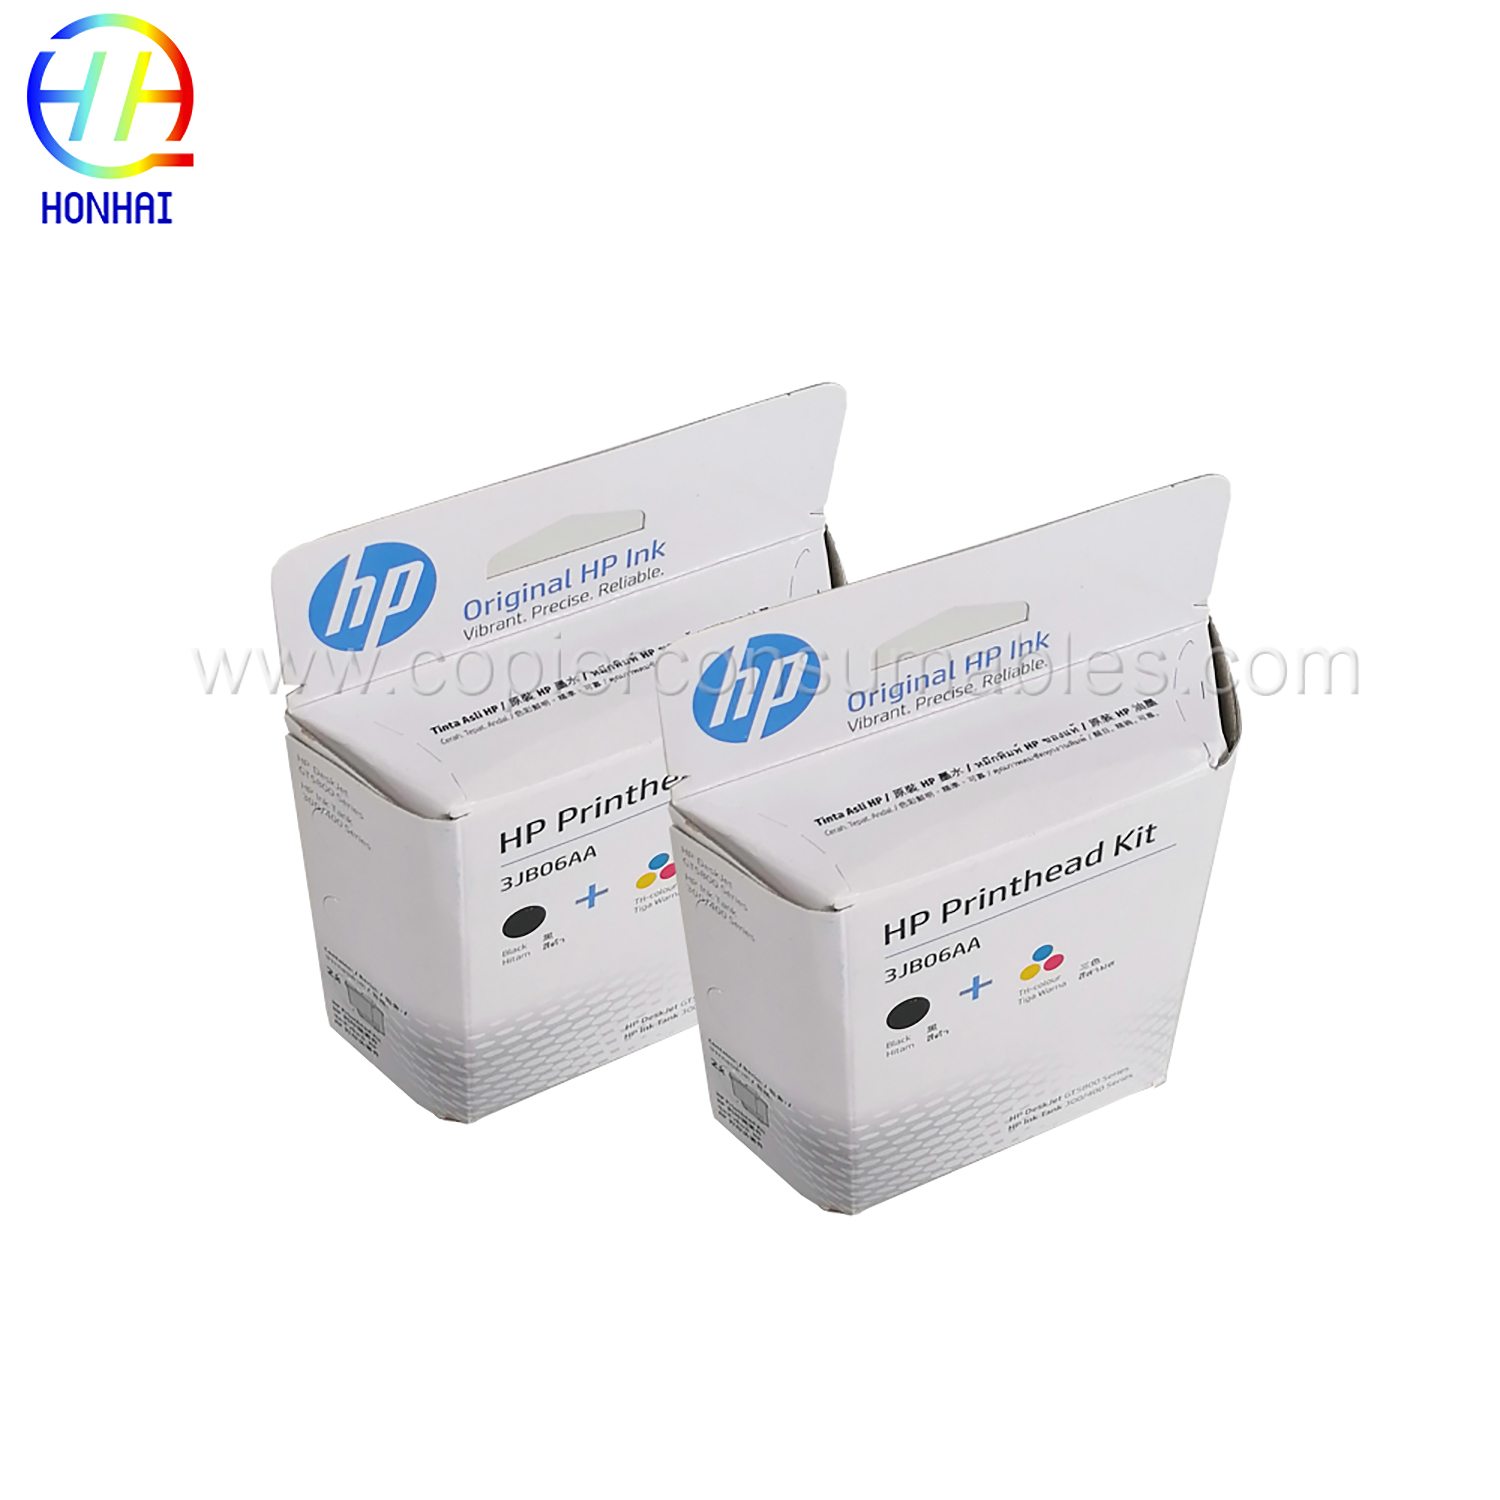 Ink Cartridge for HP GT51 GT52 GT5810 5820 310 410 318 3JB06A (3) 拷贝